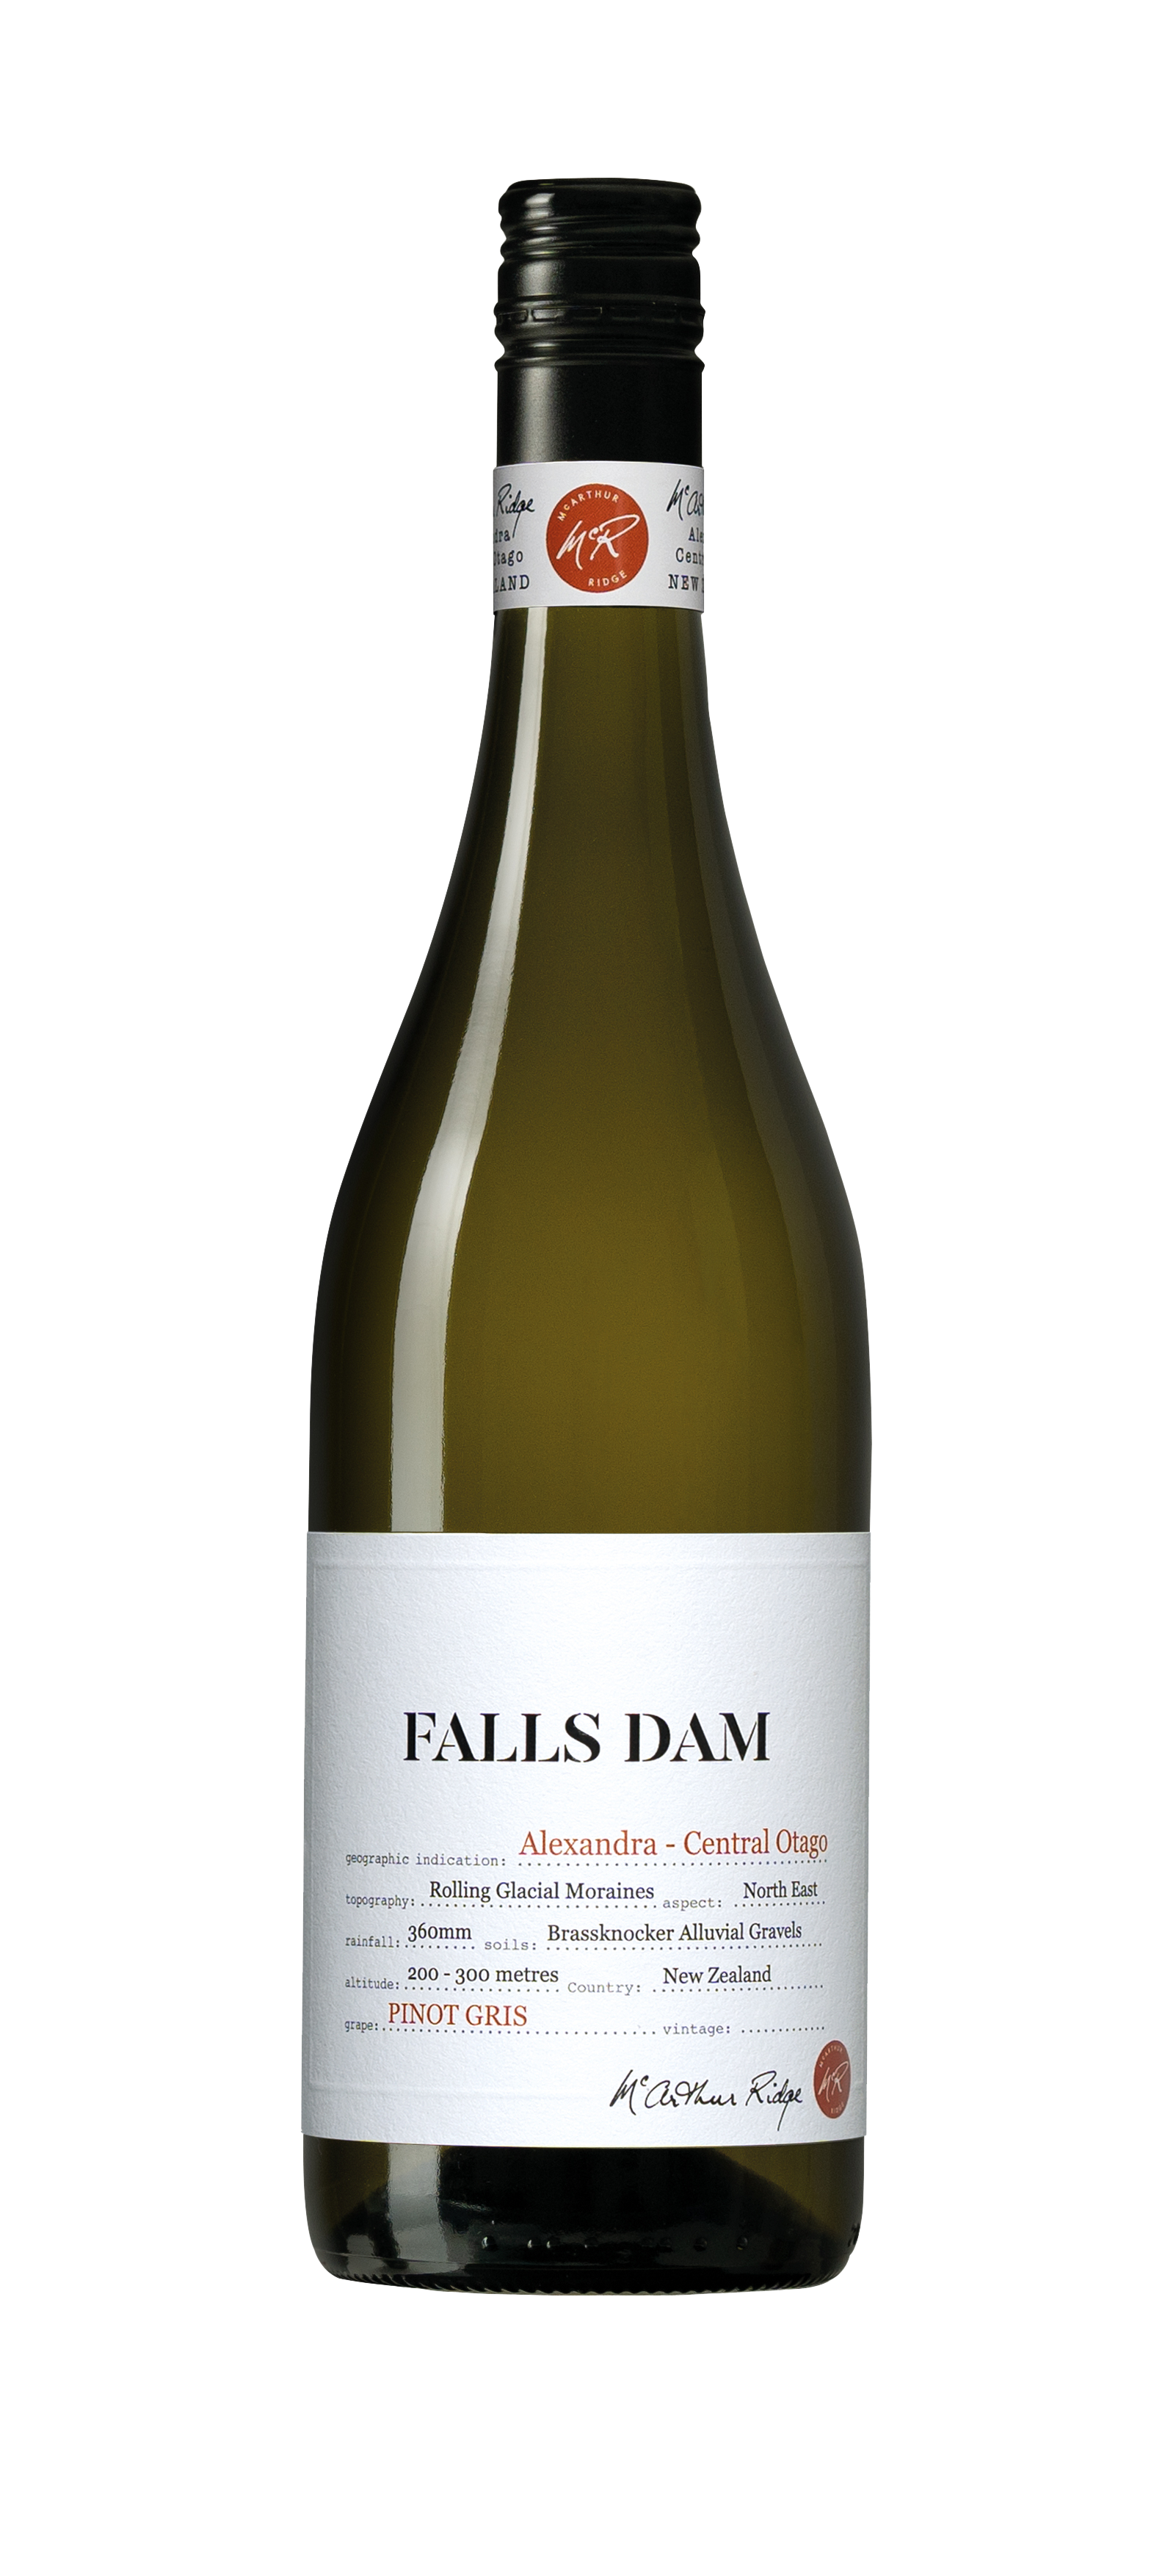 Falls Dam Pinot Gris